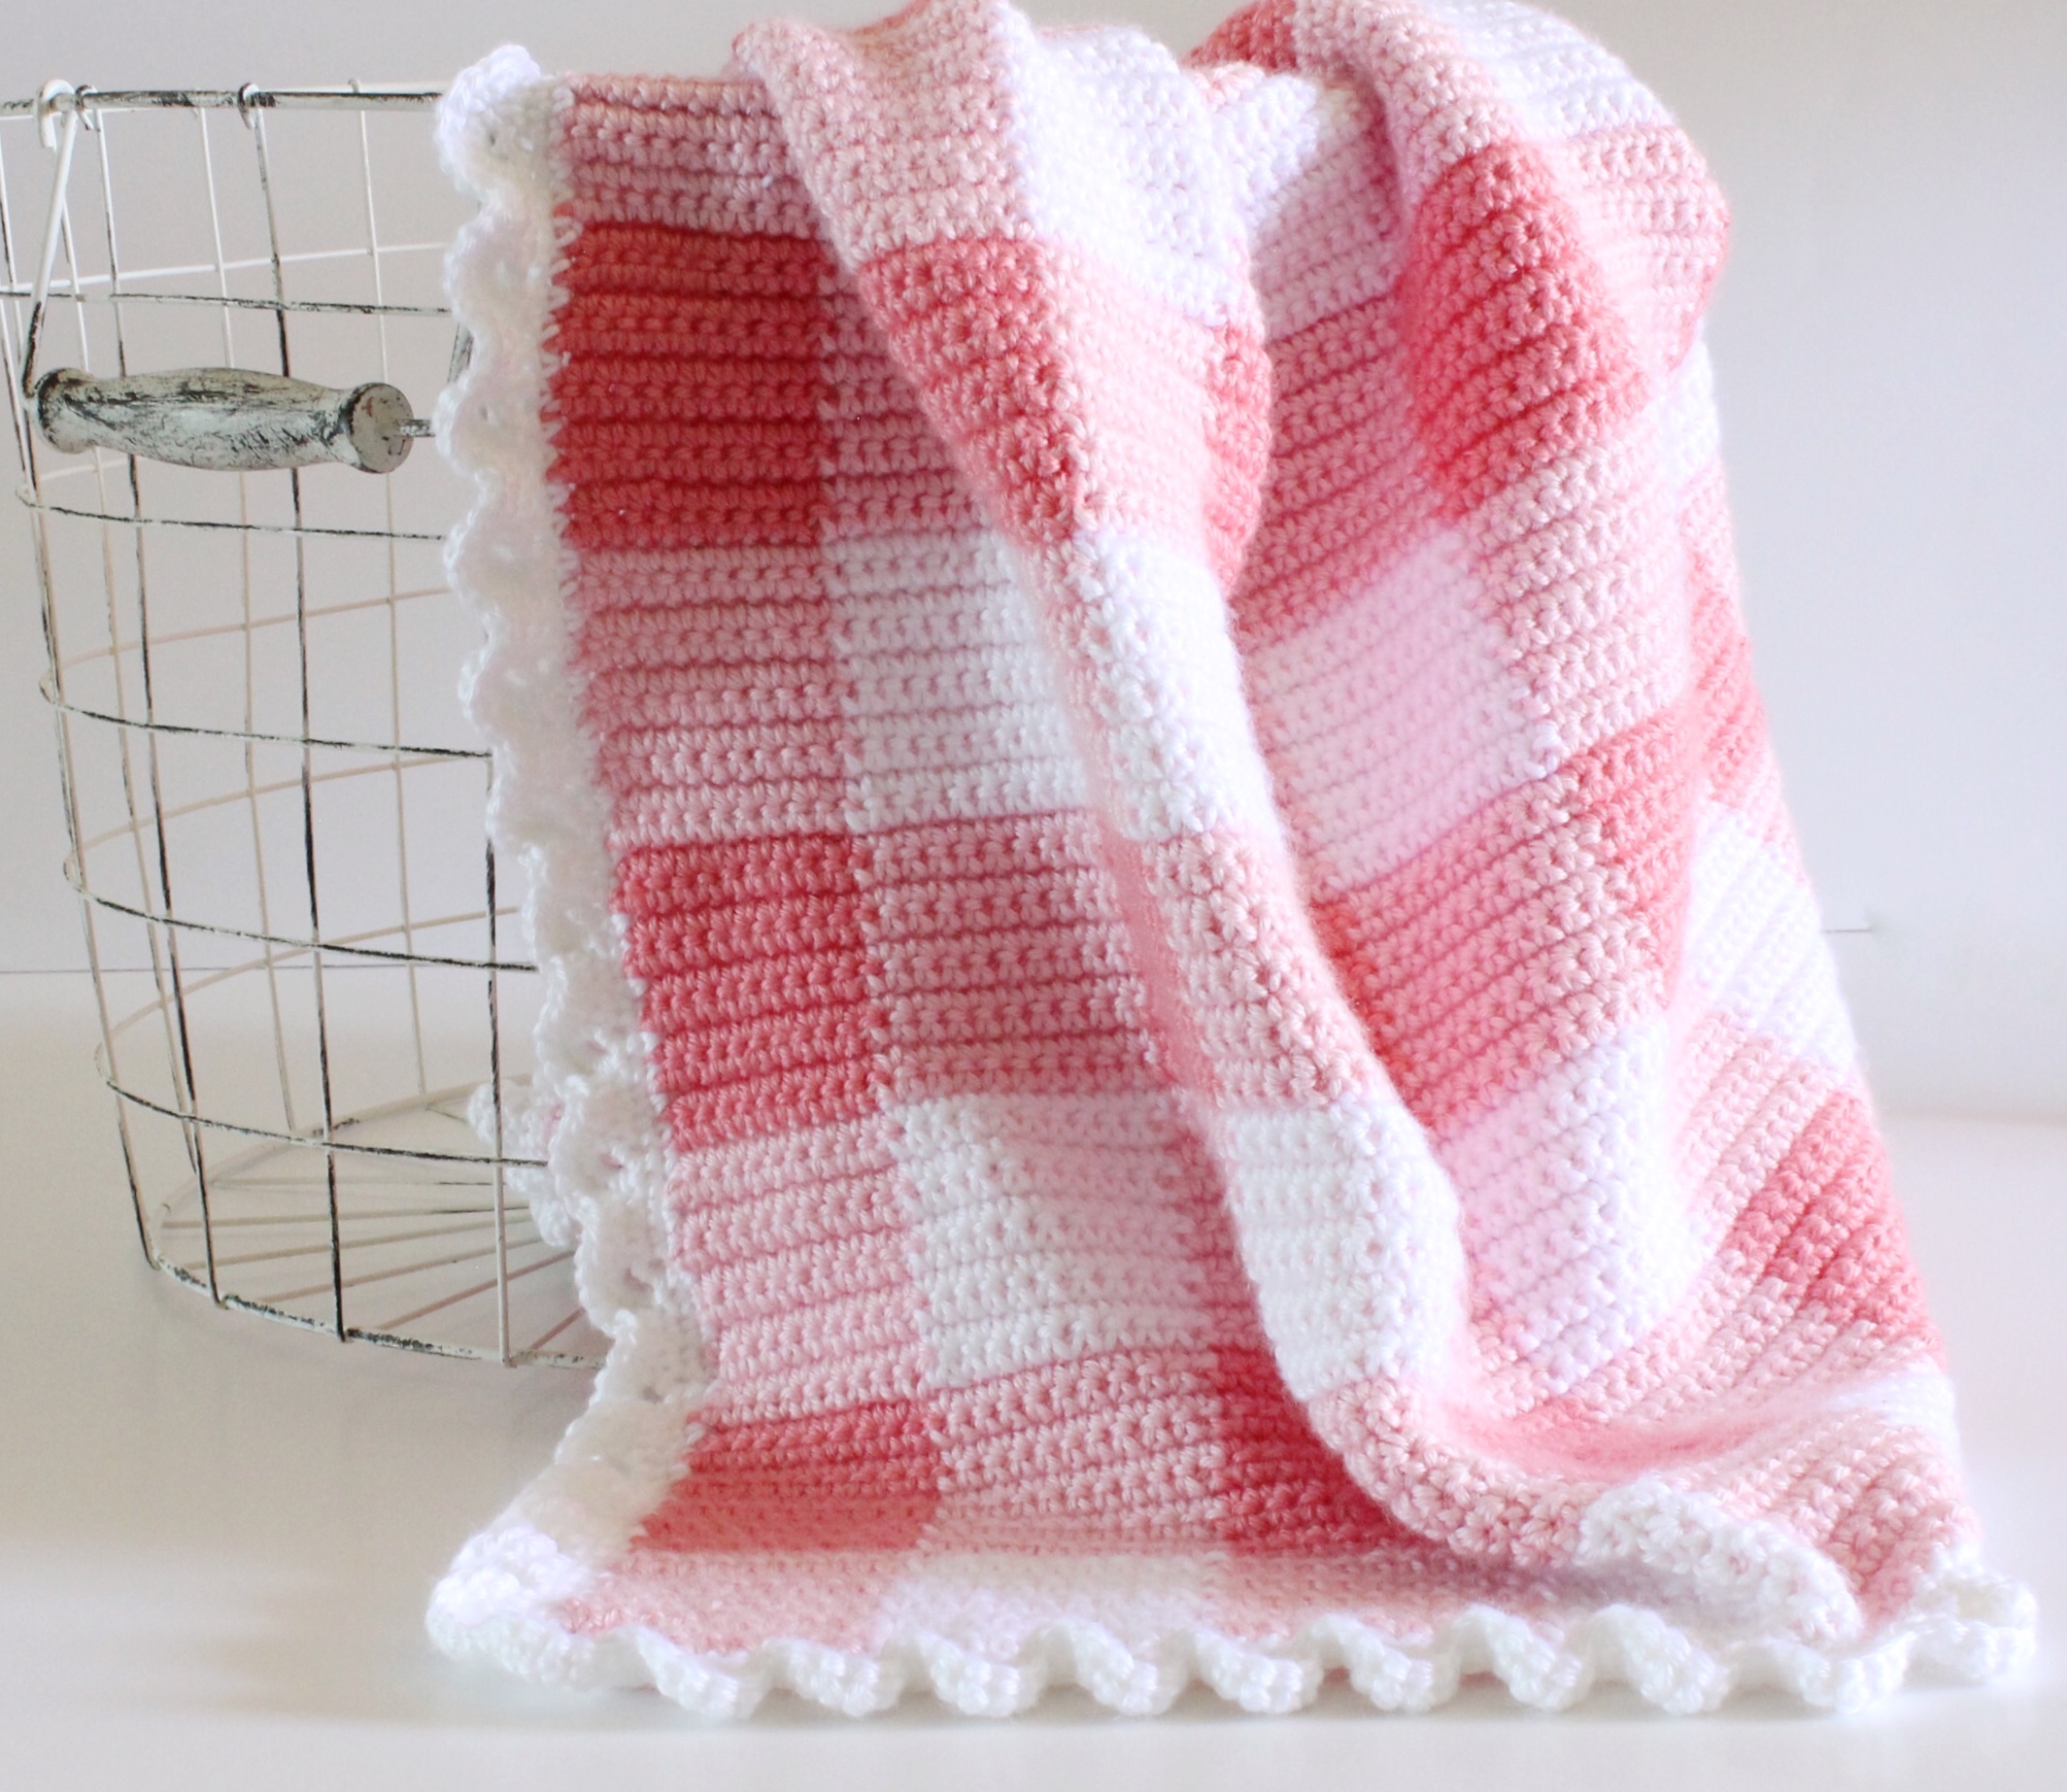 gingham crochet baby blanket